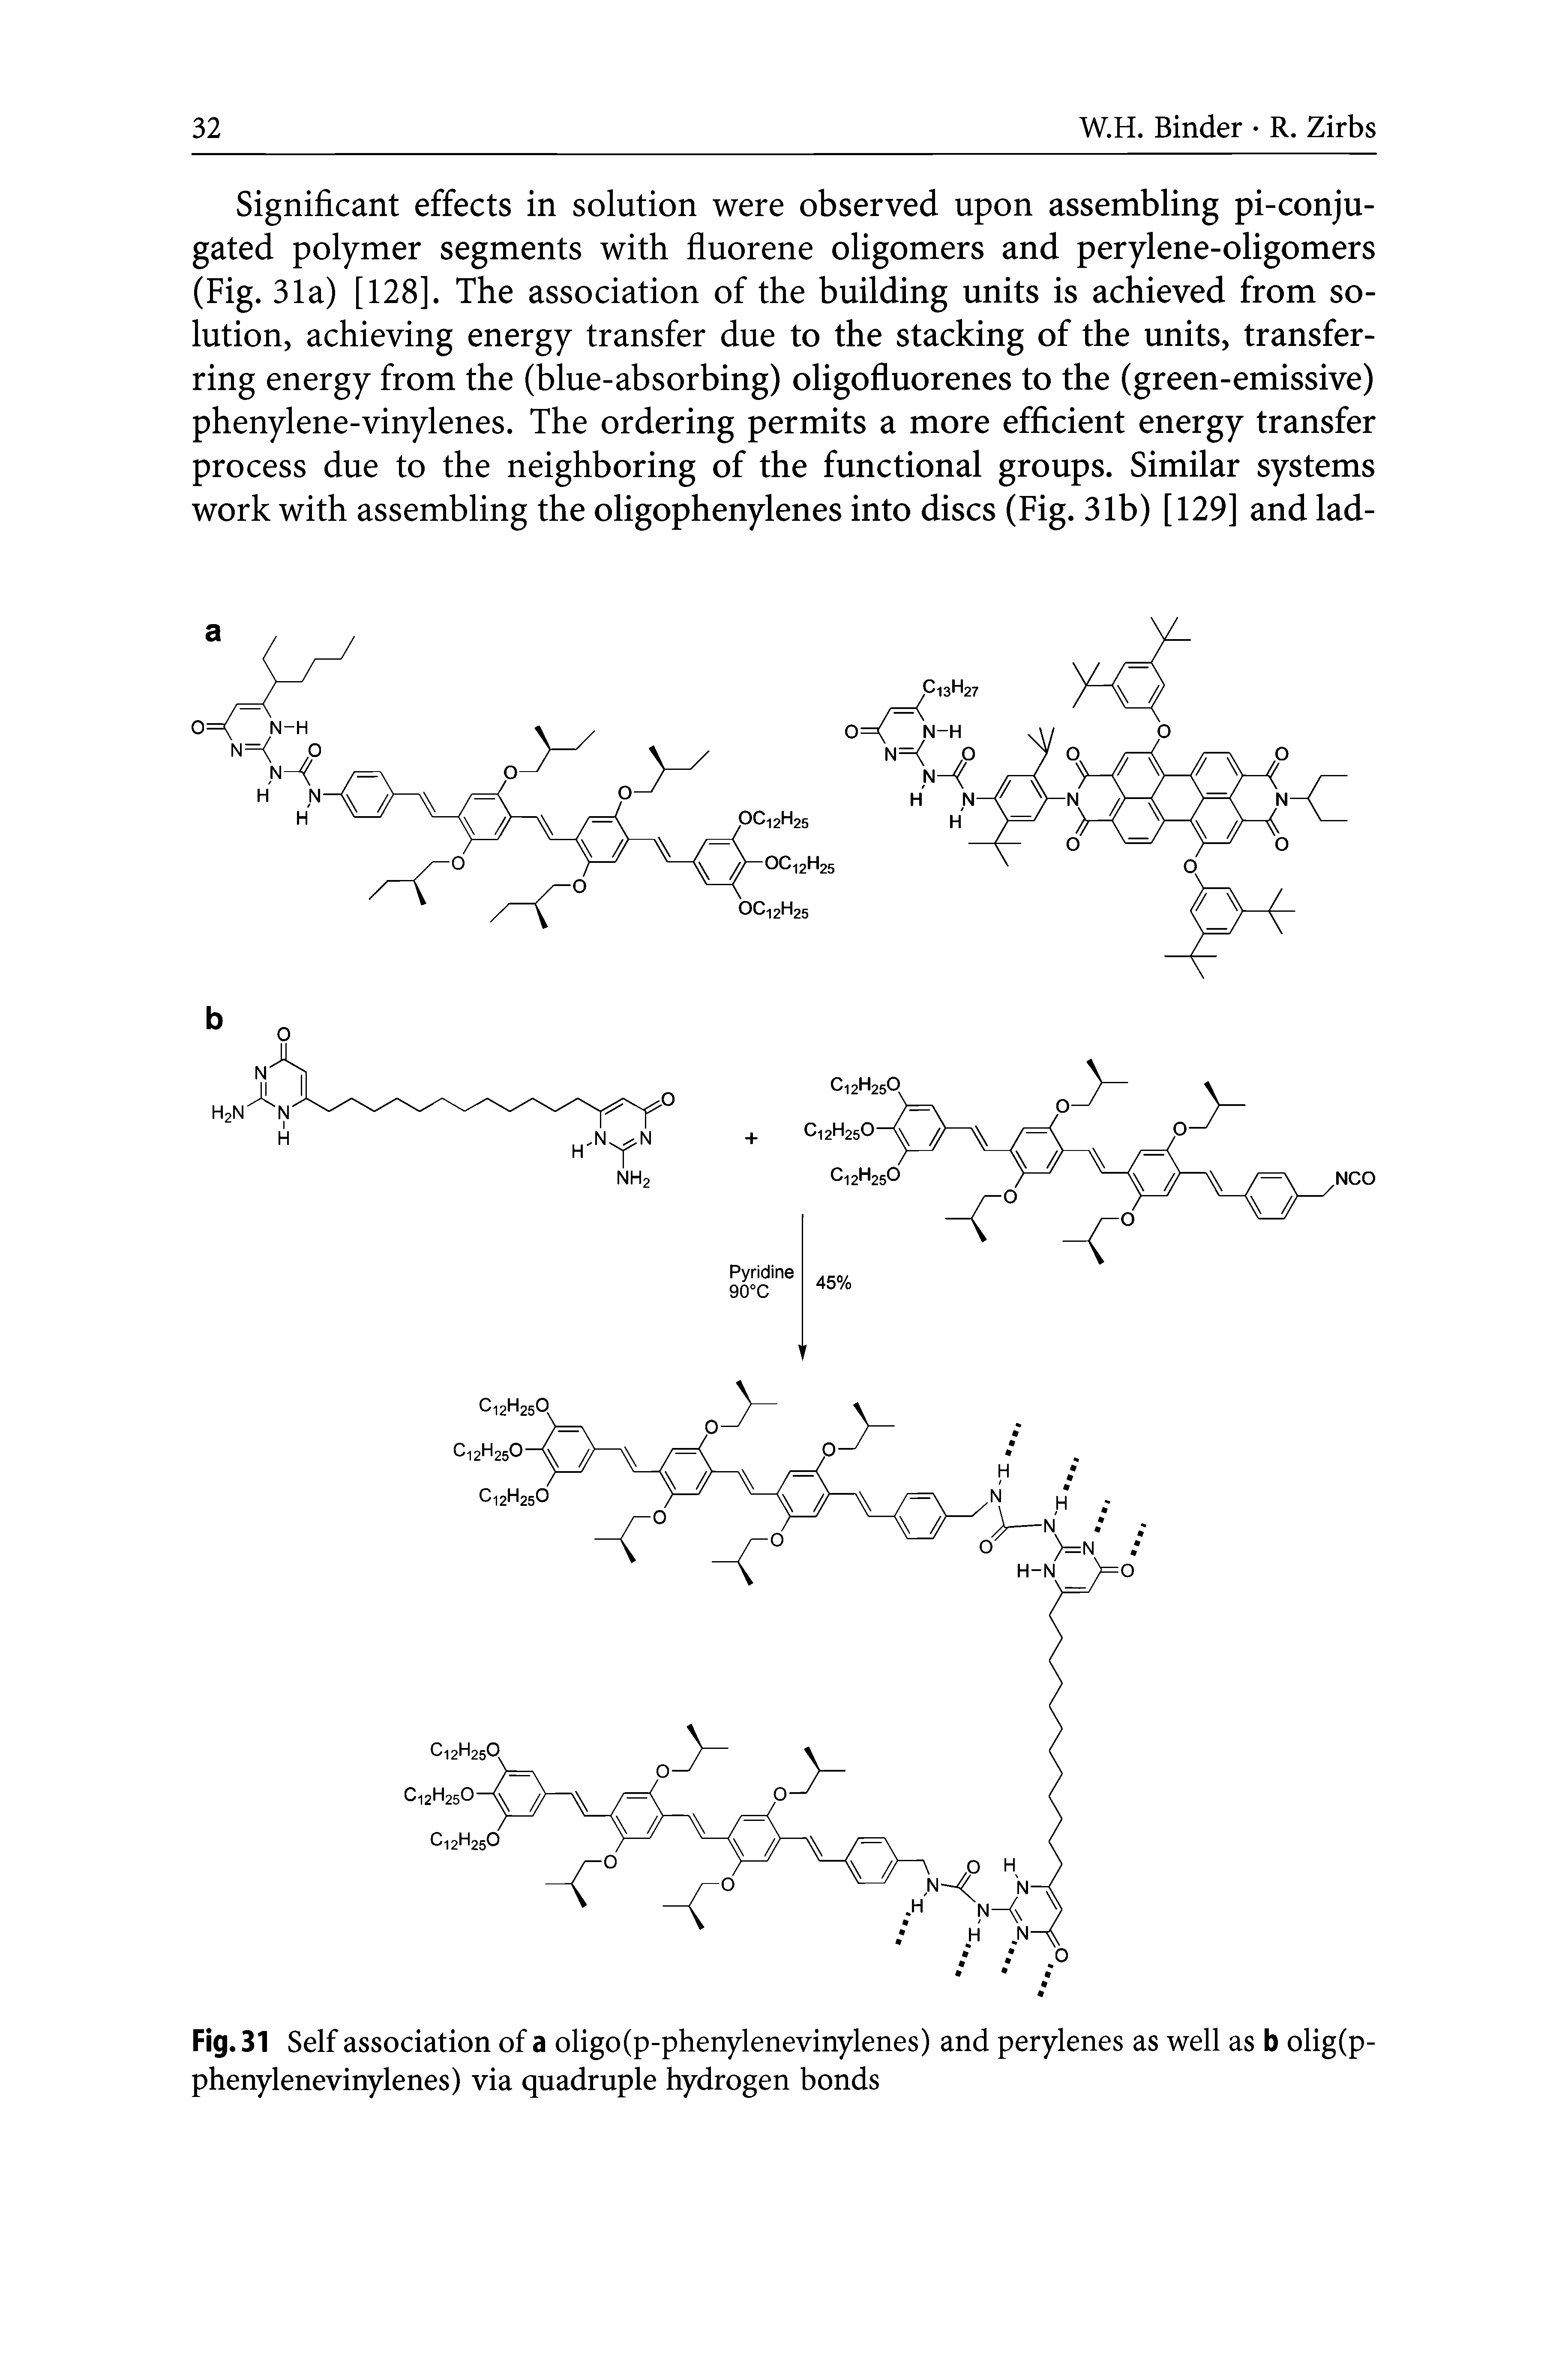 Fig.31 Self association of a oligo(p-phenylenevinylenes) and perylenes as well as b olig(p-phenylenevinylenes) via quadruple hydrogen bonds...